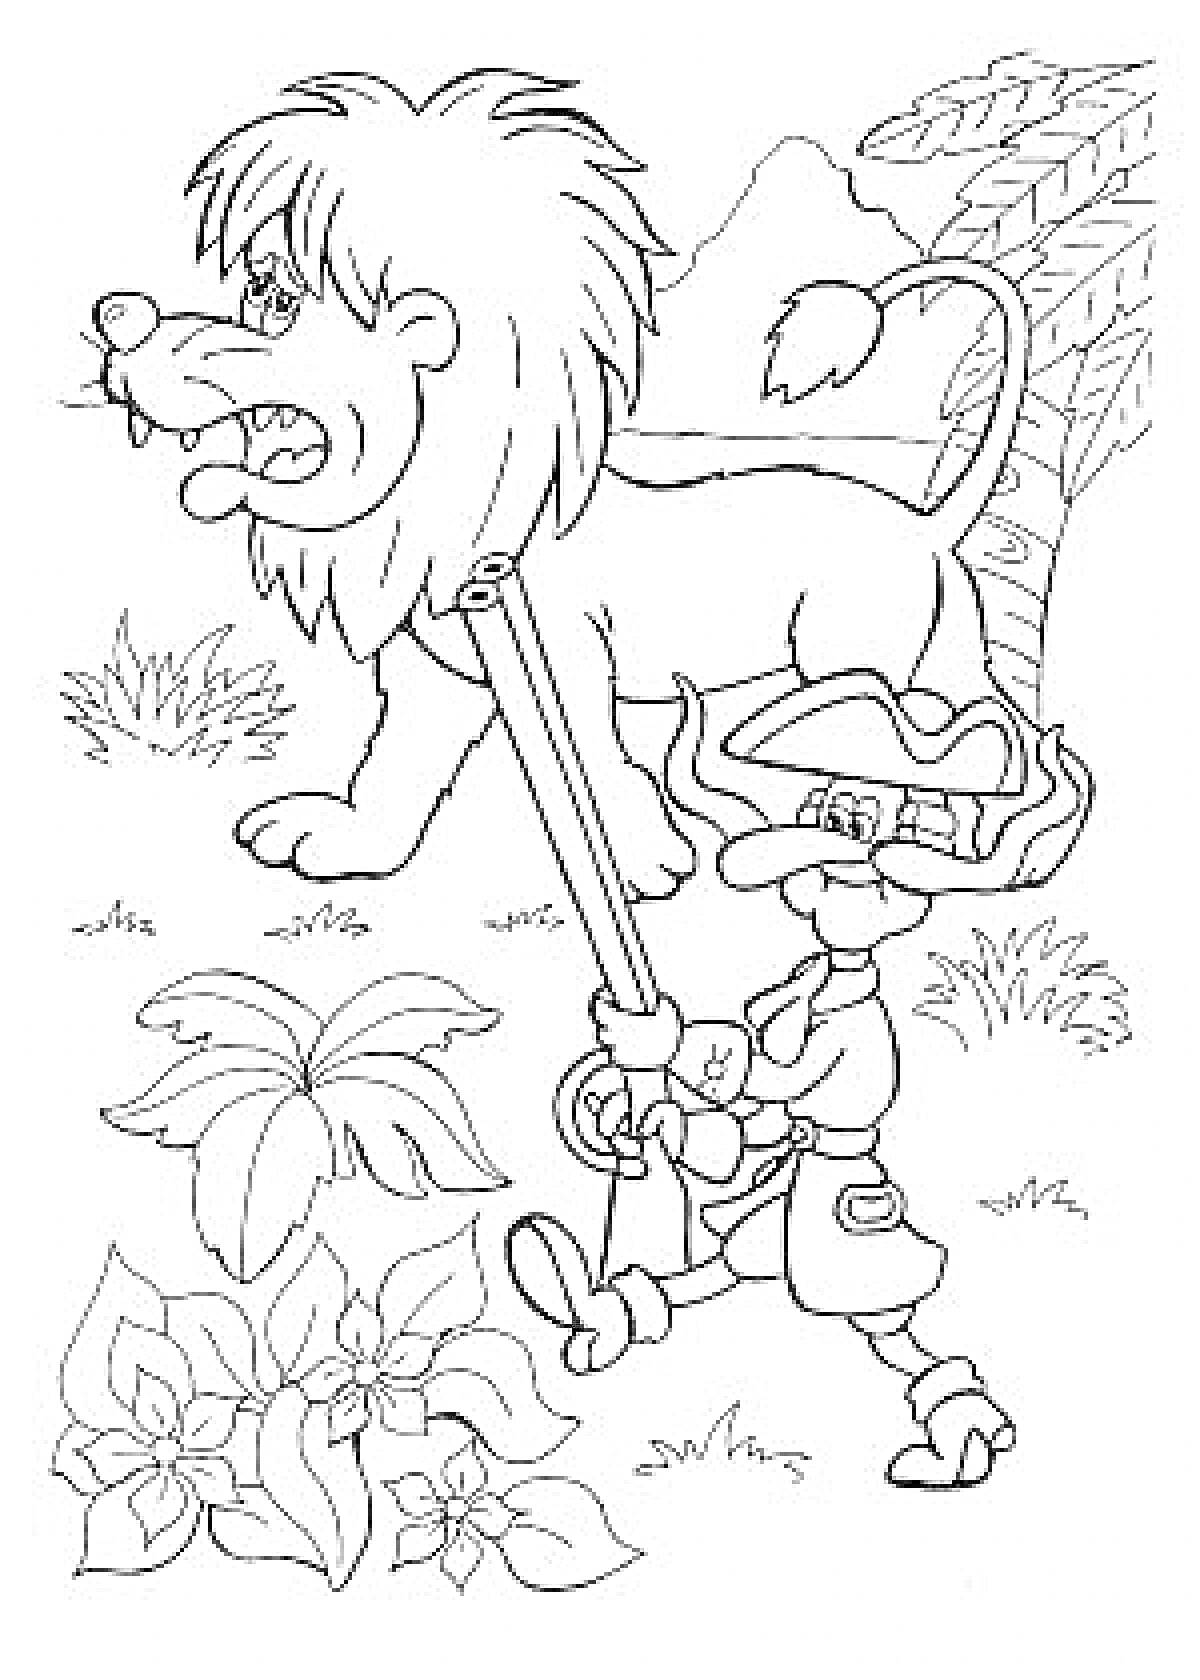 Барон Мюнхгаузен верхом на льве, с ружьем в джунглях, вокруг растения и кусты